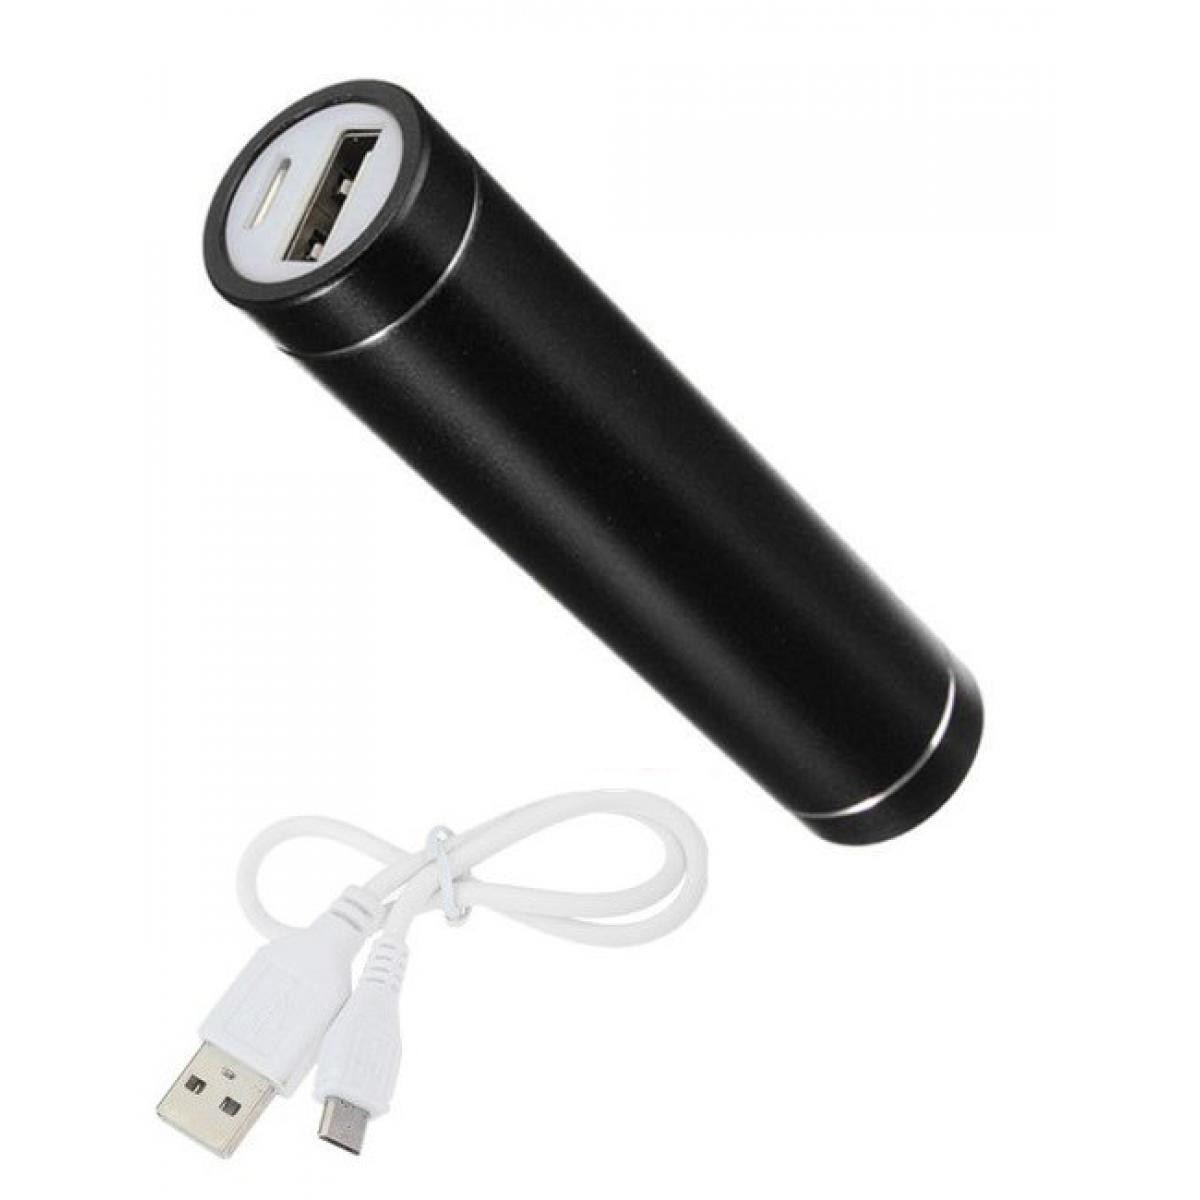 Shot - Batterie Chargeur Externe pour SAMSUNG Galaxy Fold Power Bank 2600mAh avec Cable USB/Mirco USB Secours Telephone (NOIR) - Chargeur secteur téléphone